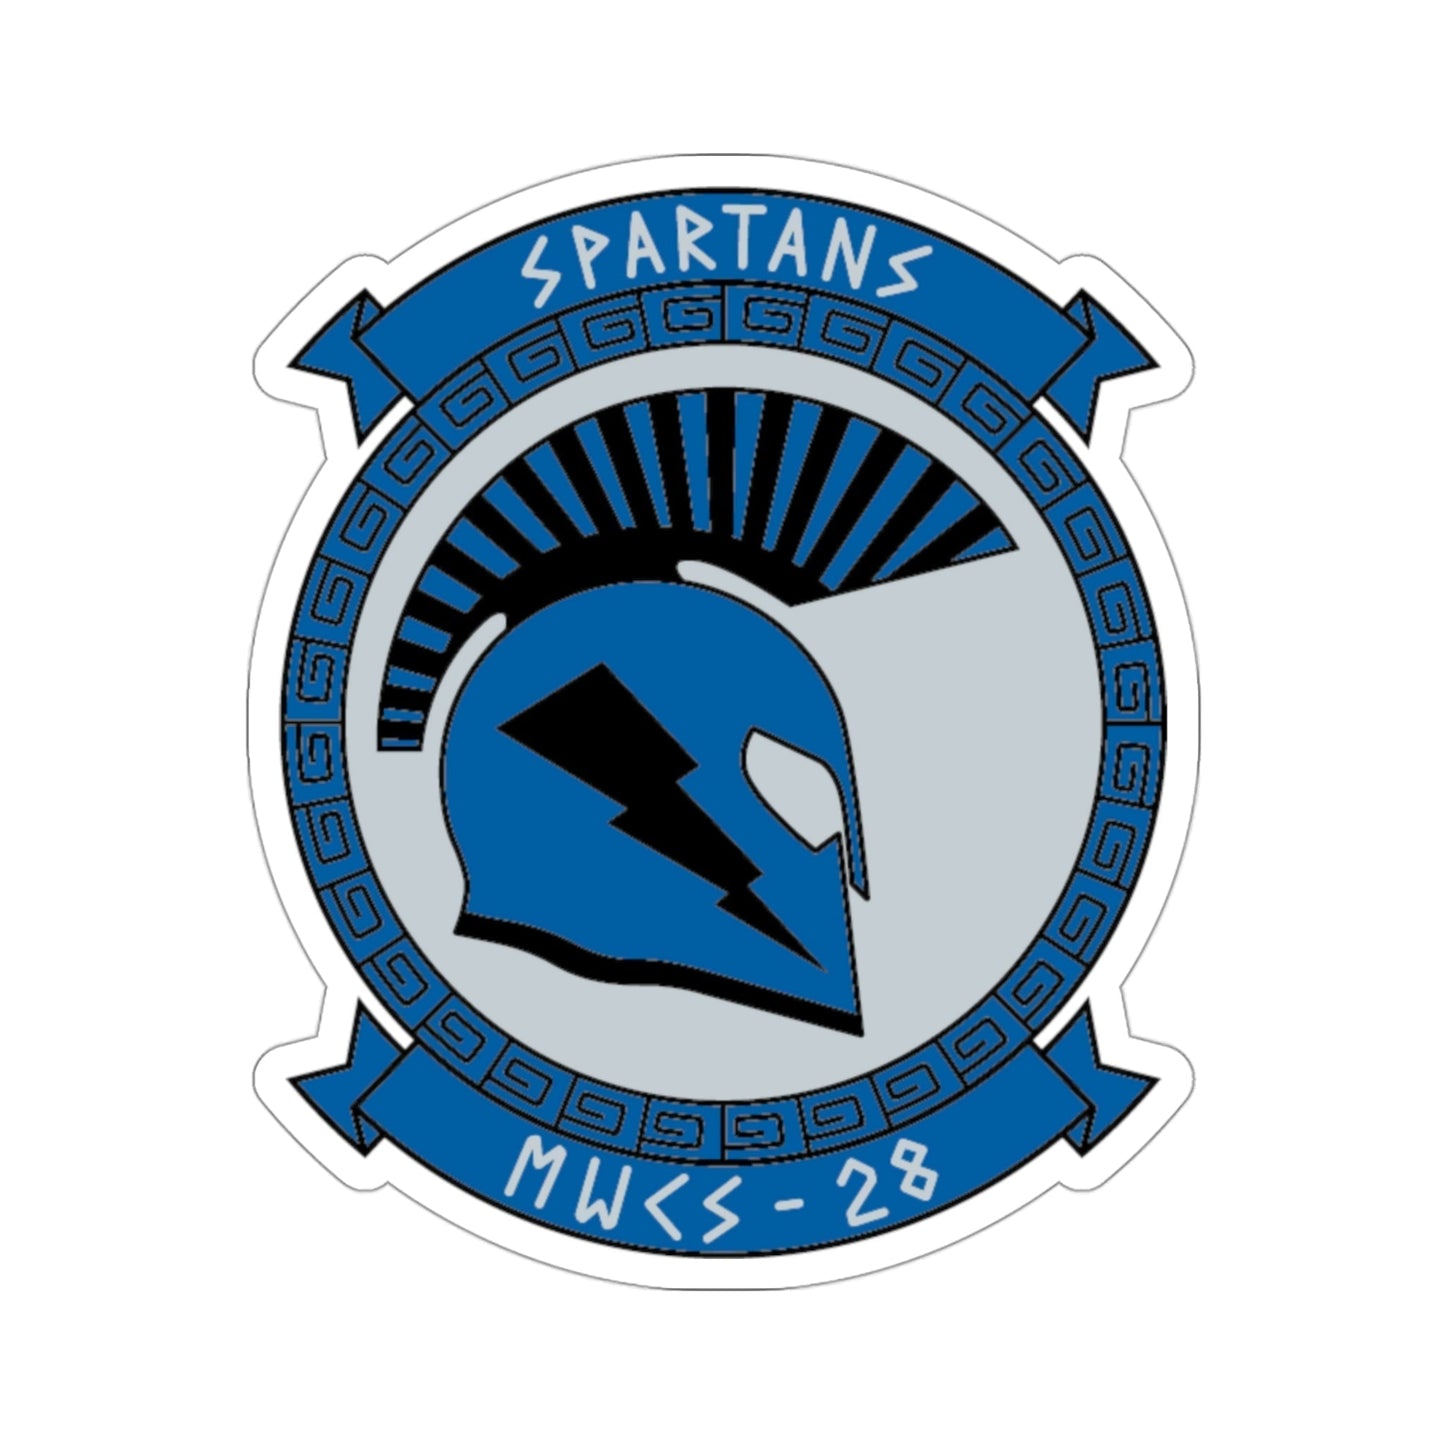 MWCS 28 Spartans (USMC) STICKER Vinyl Die-Cut Decal-3 Inch-The Sticker Space